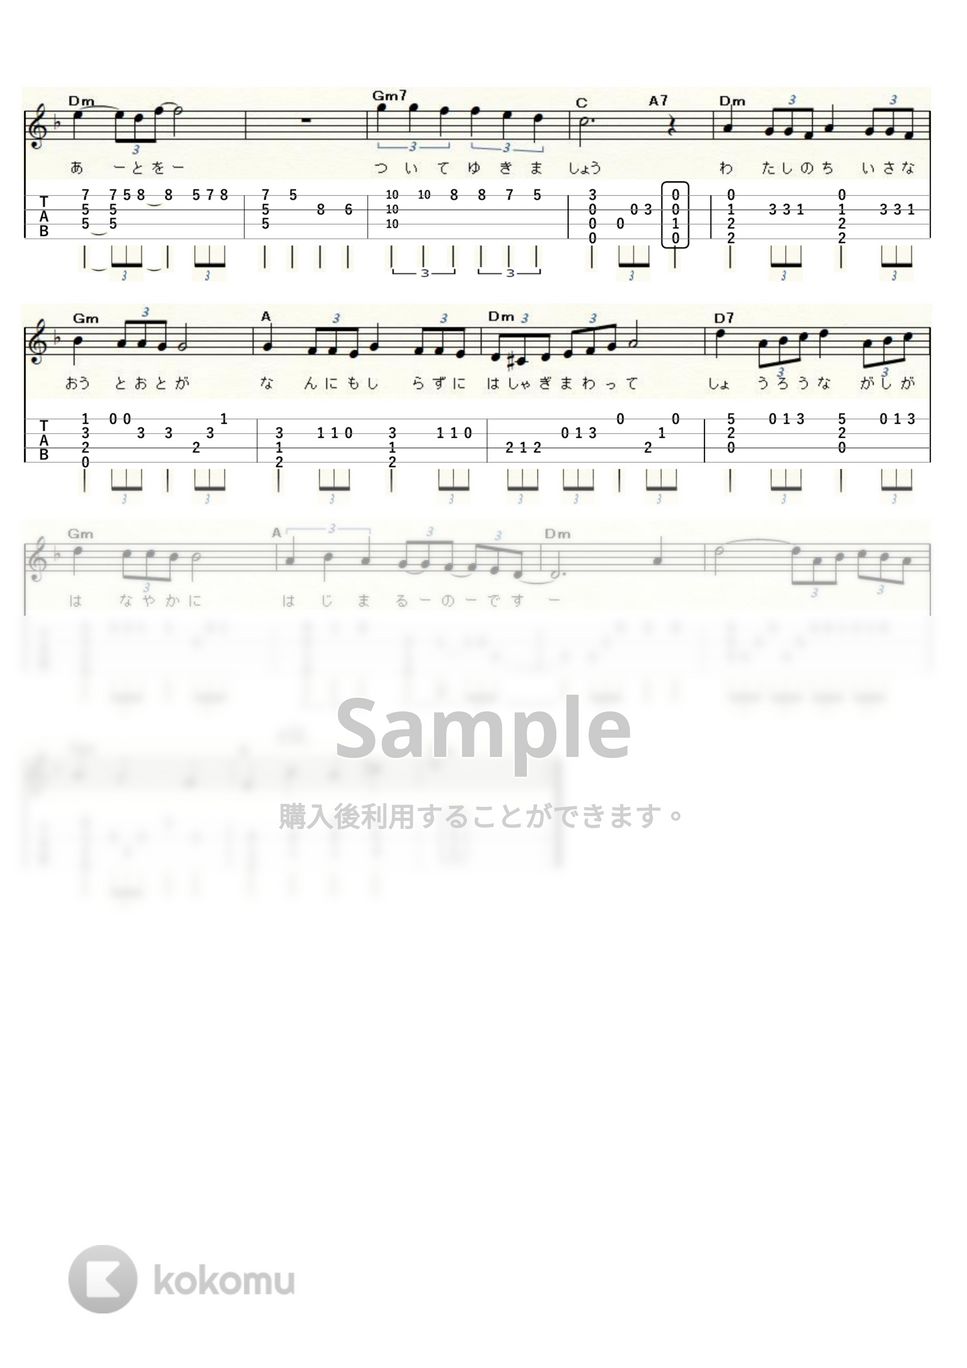 グレープ - 精霊流し (ｳｸﾚﾚｿﾛ / High-G,Low-G / 中級) by ukulelepapa